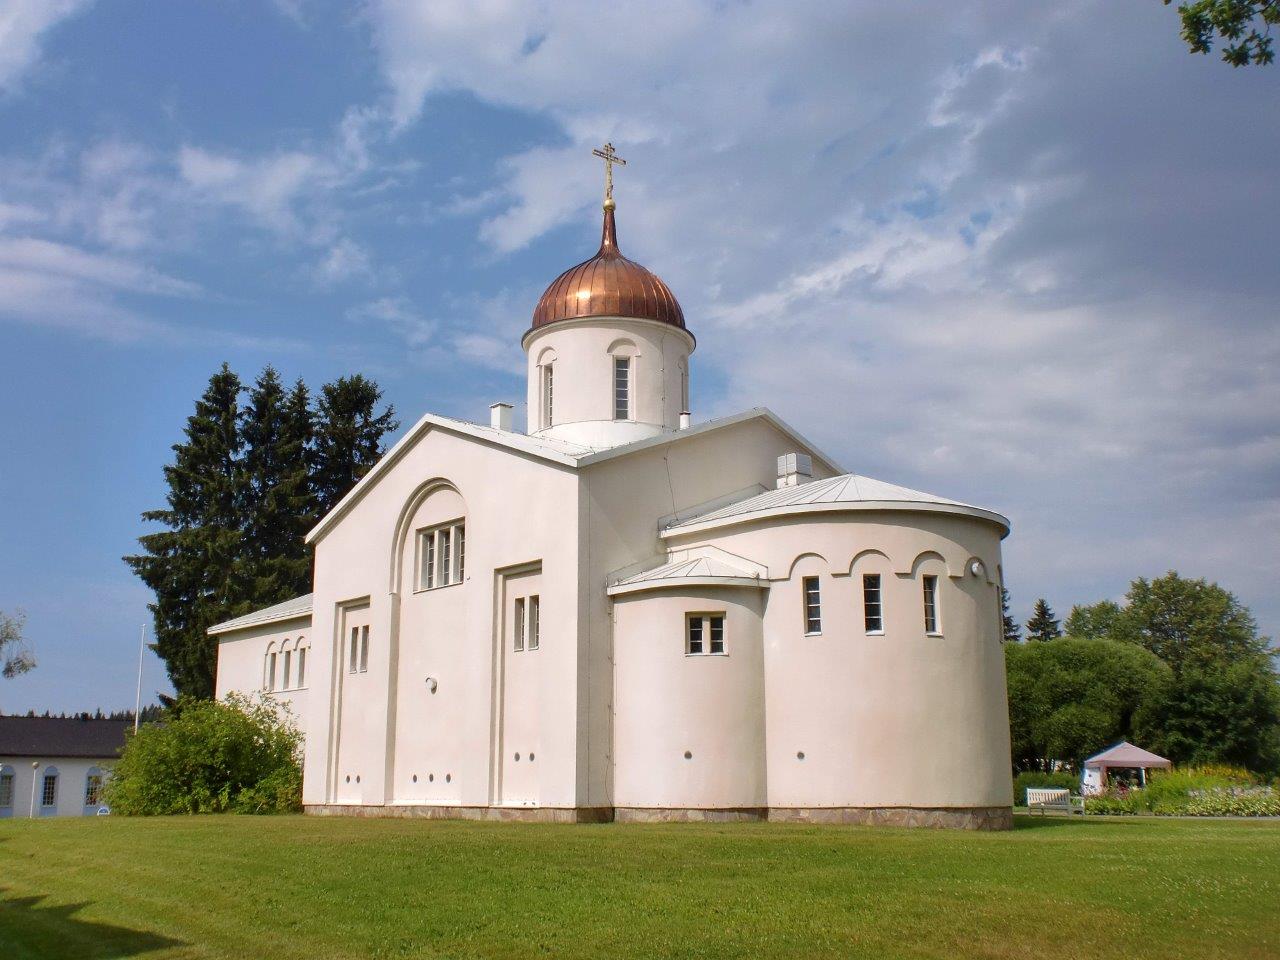 Papinniemen Kristuksen kirkastumisen kirkko. Wiki Loves Monuments, CC BY-SA 4.0 Mikkoau 2014